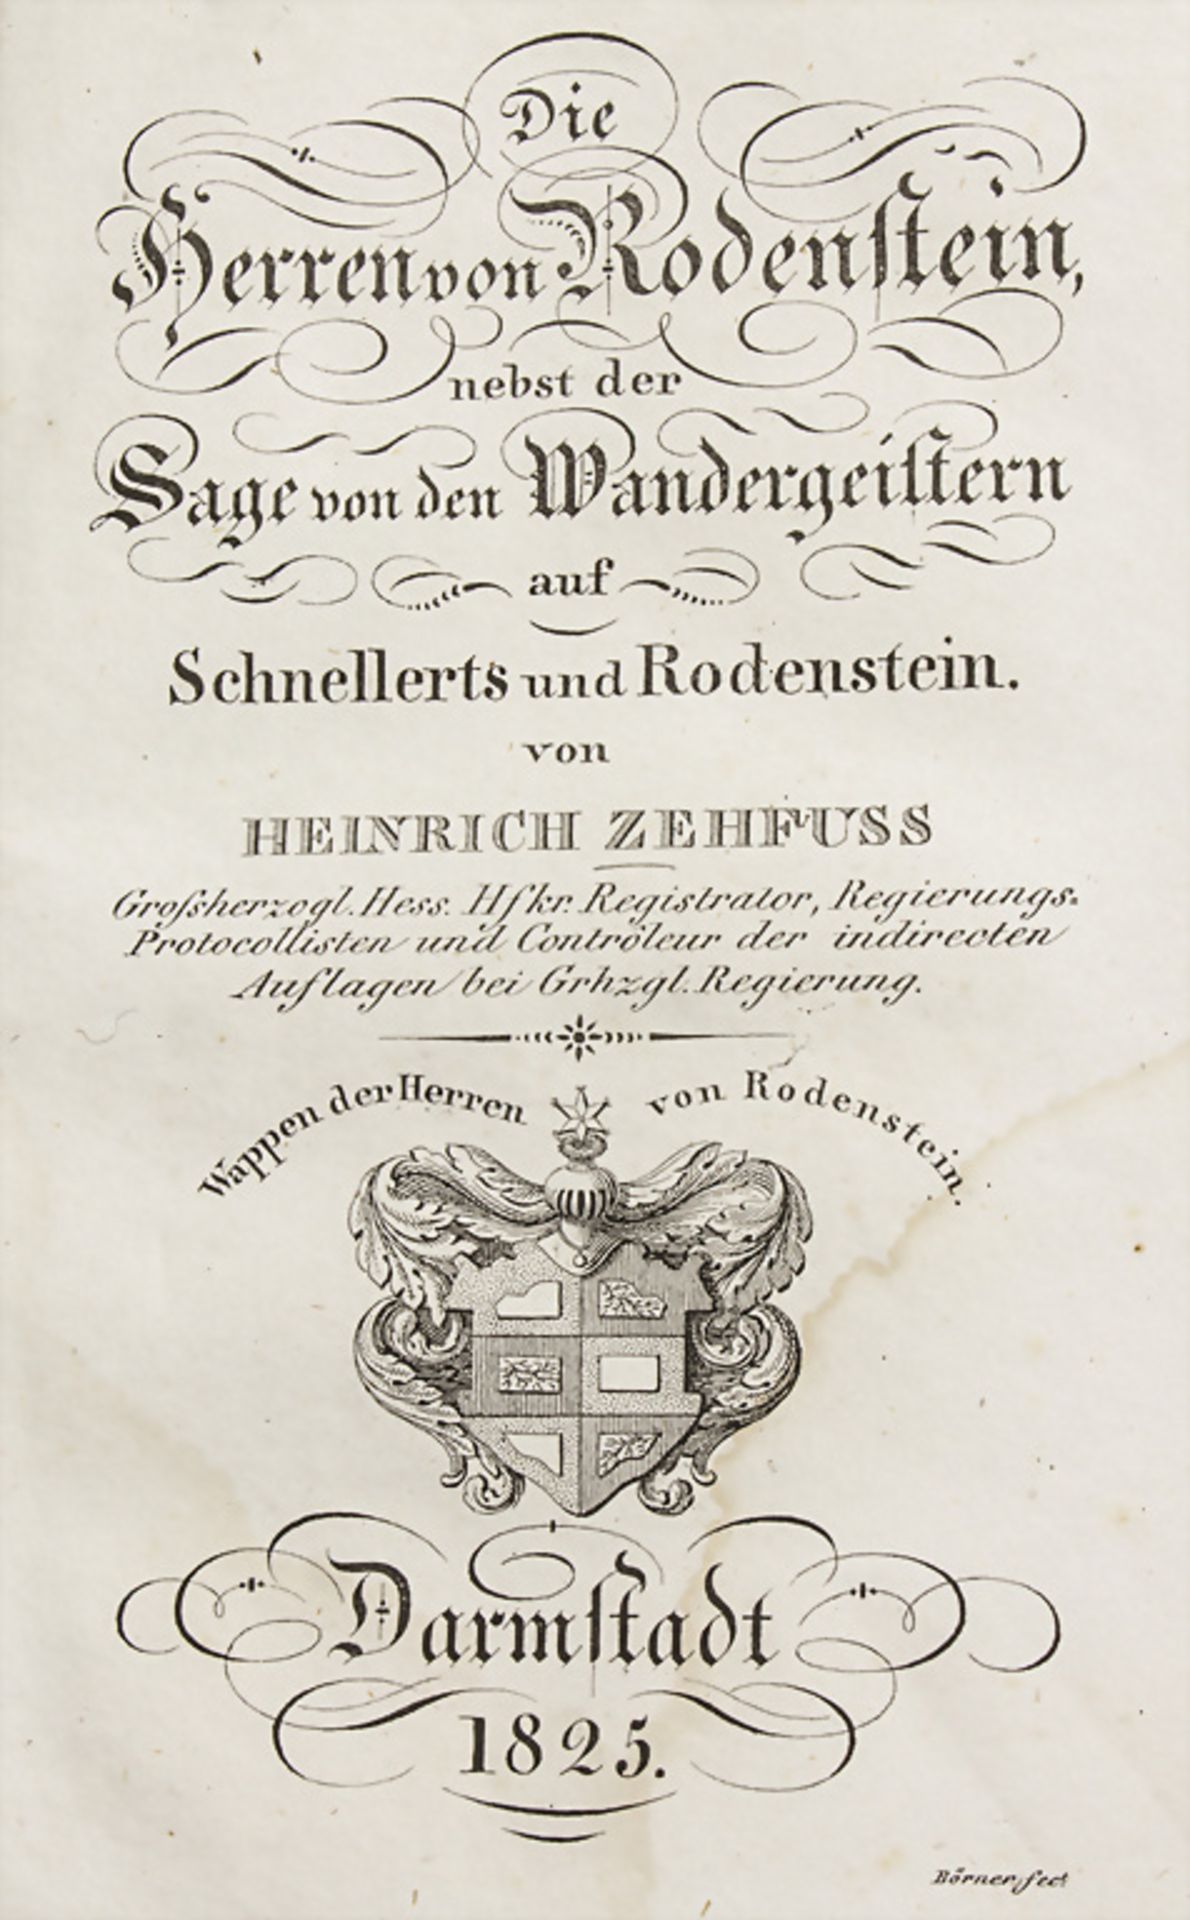 Heinrich Zehfuss, 'Die Herren von Rodenstein', Darmstadt, 1825